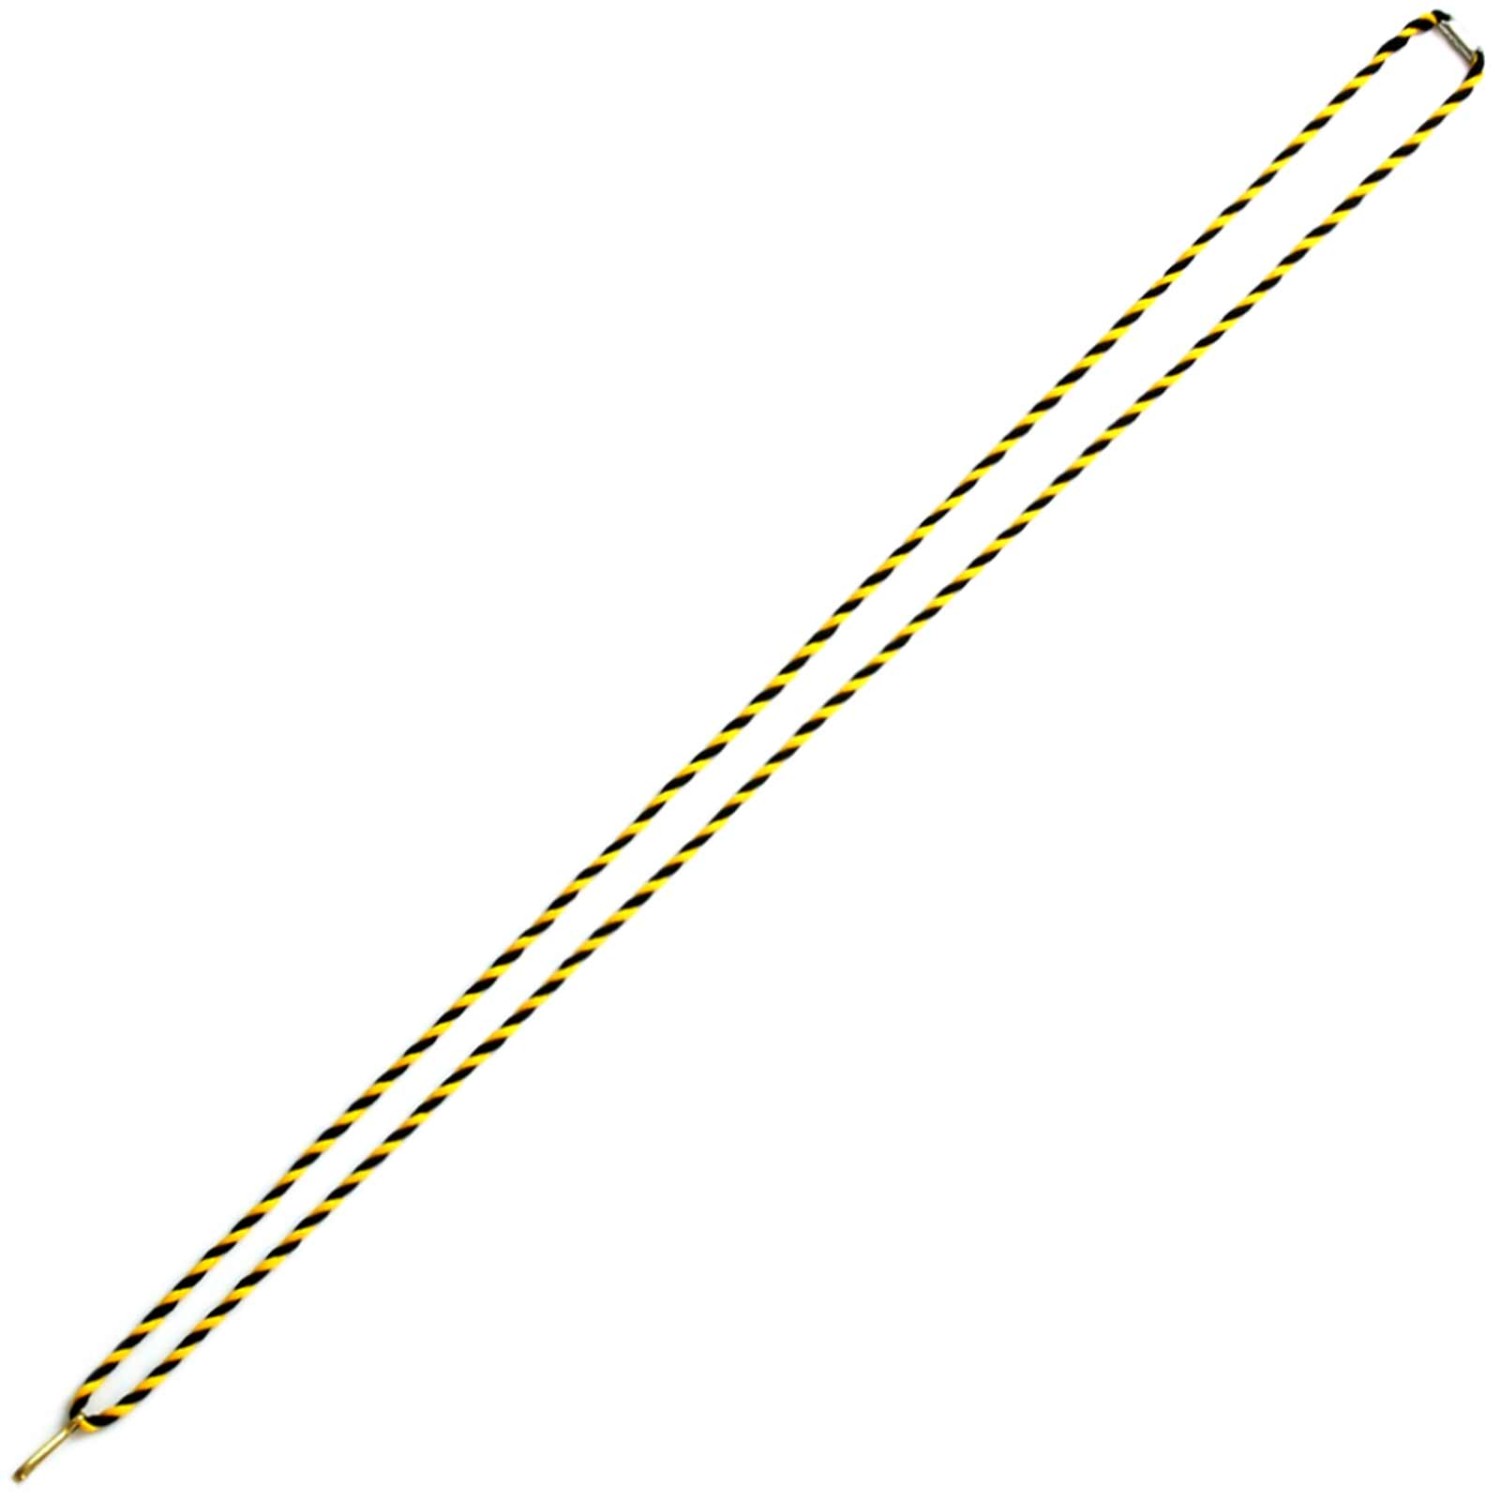 Kordelband Halskordel Medaillenband als Kordel 42 cm lang (Kordelfarbe: schwarz gelb)